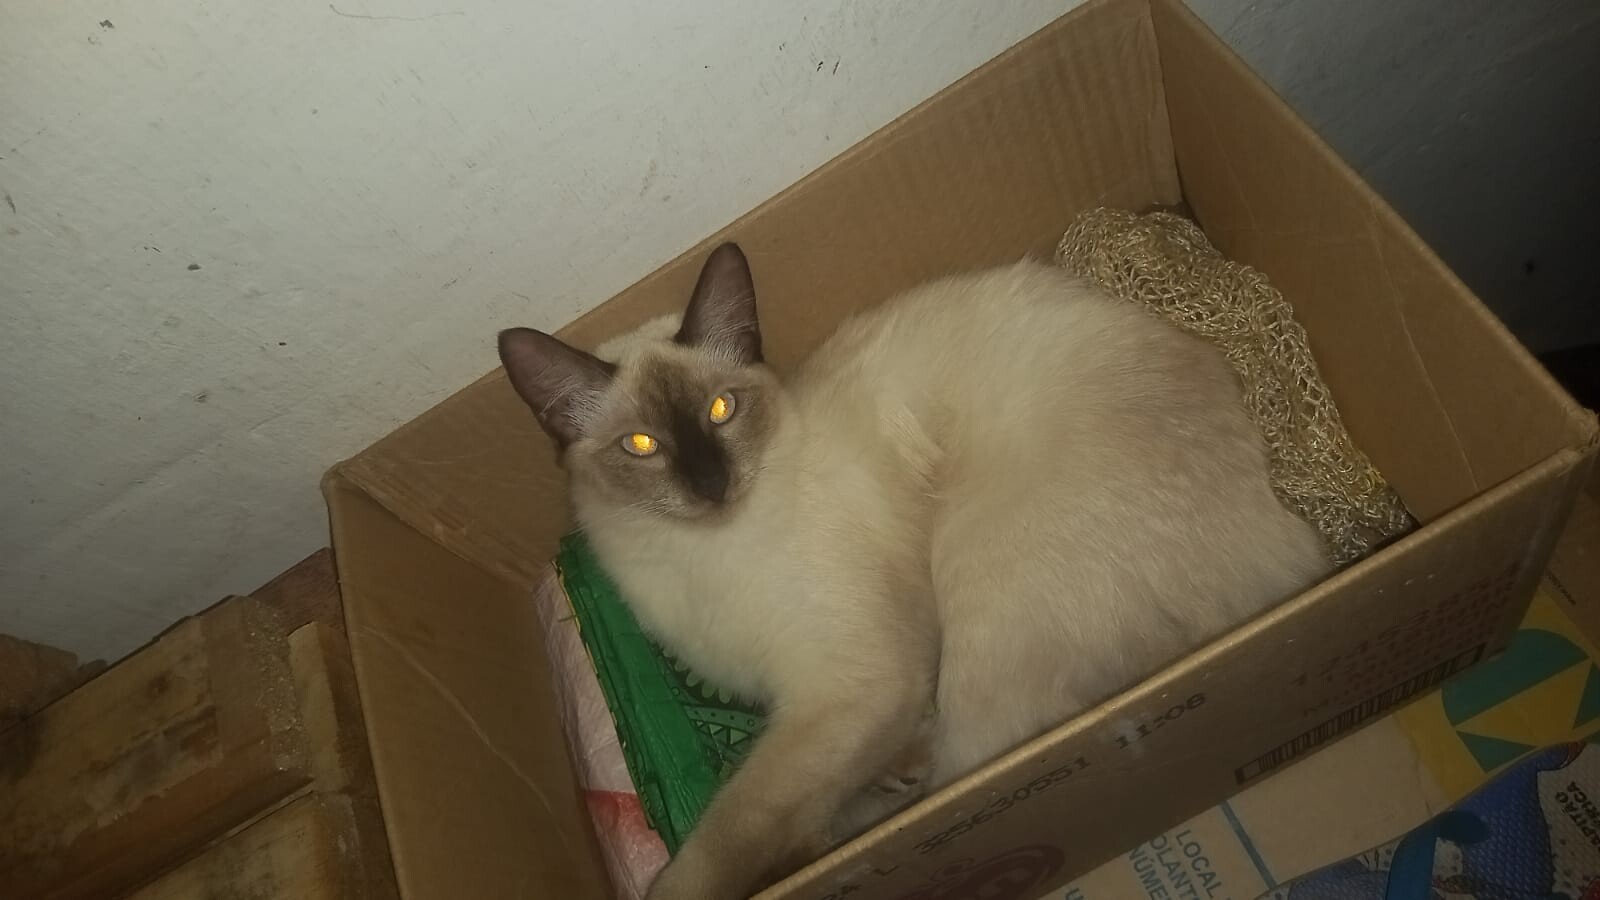 Falsa veterinária cobrou R$ 100 por castração em Maceió; 'entreguei minha gata com vida e não a vi mais', lamenta tutora